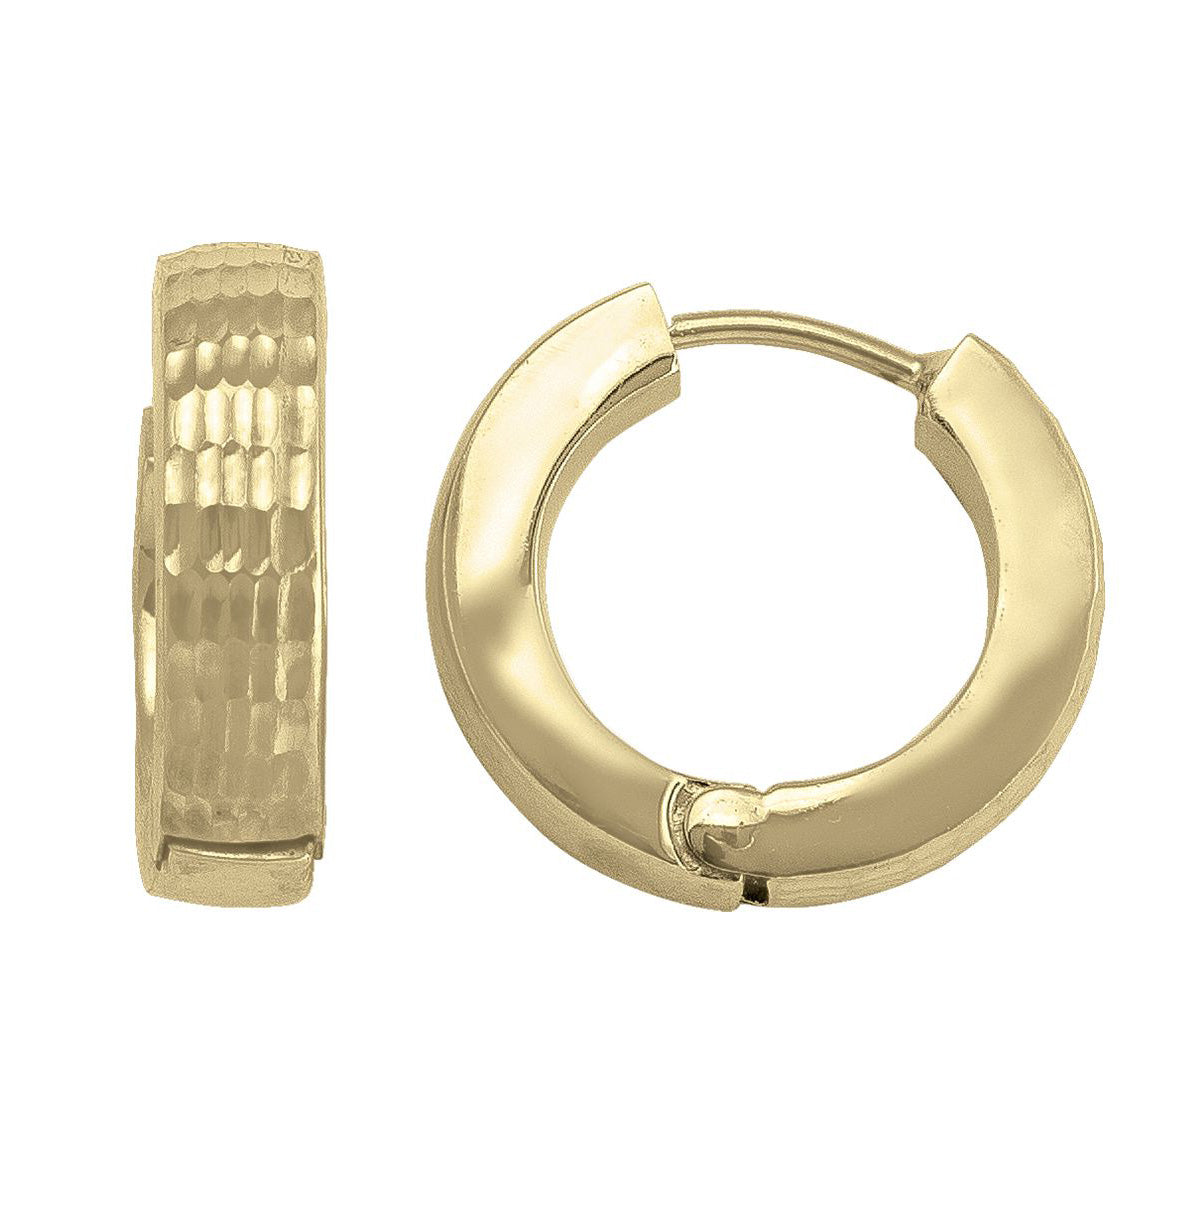 EHG0105, Gold Earrings, Huggies, 4.7 mm Tubing